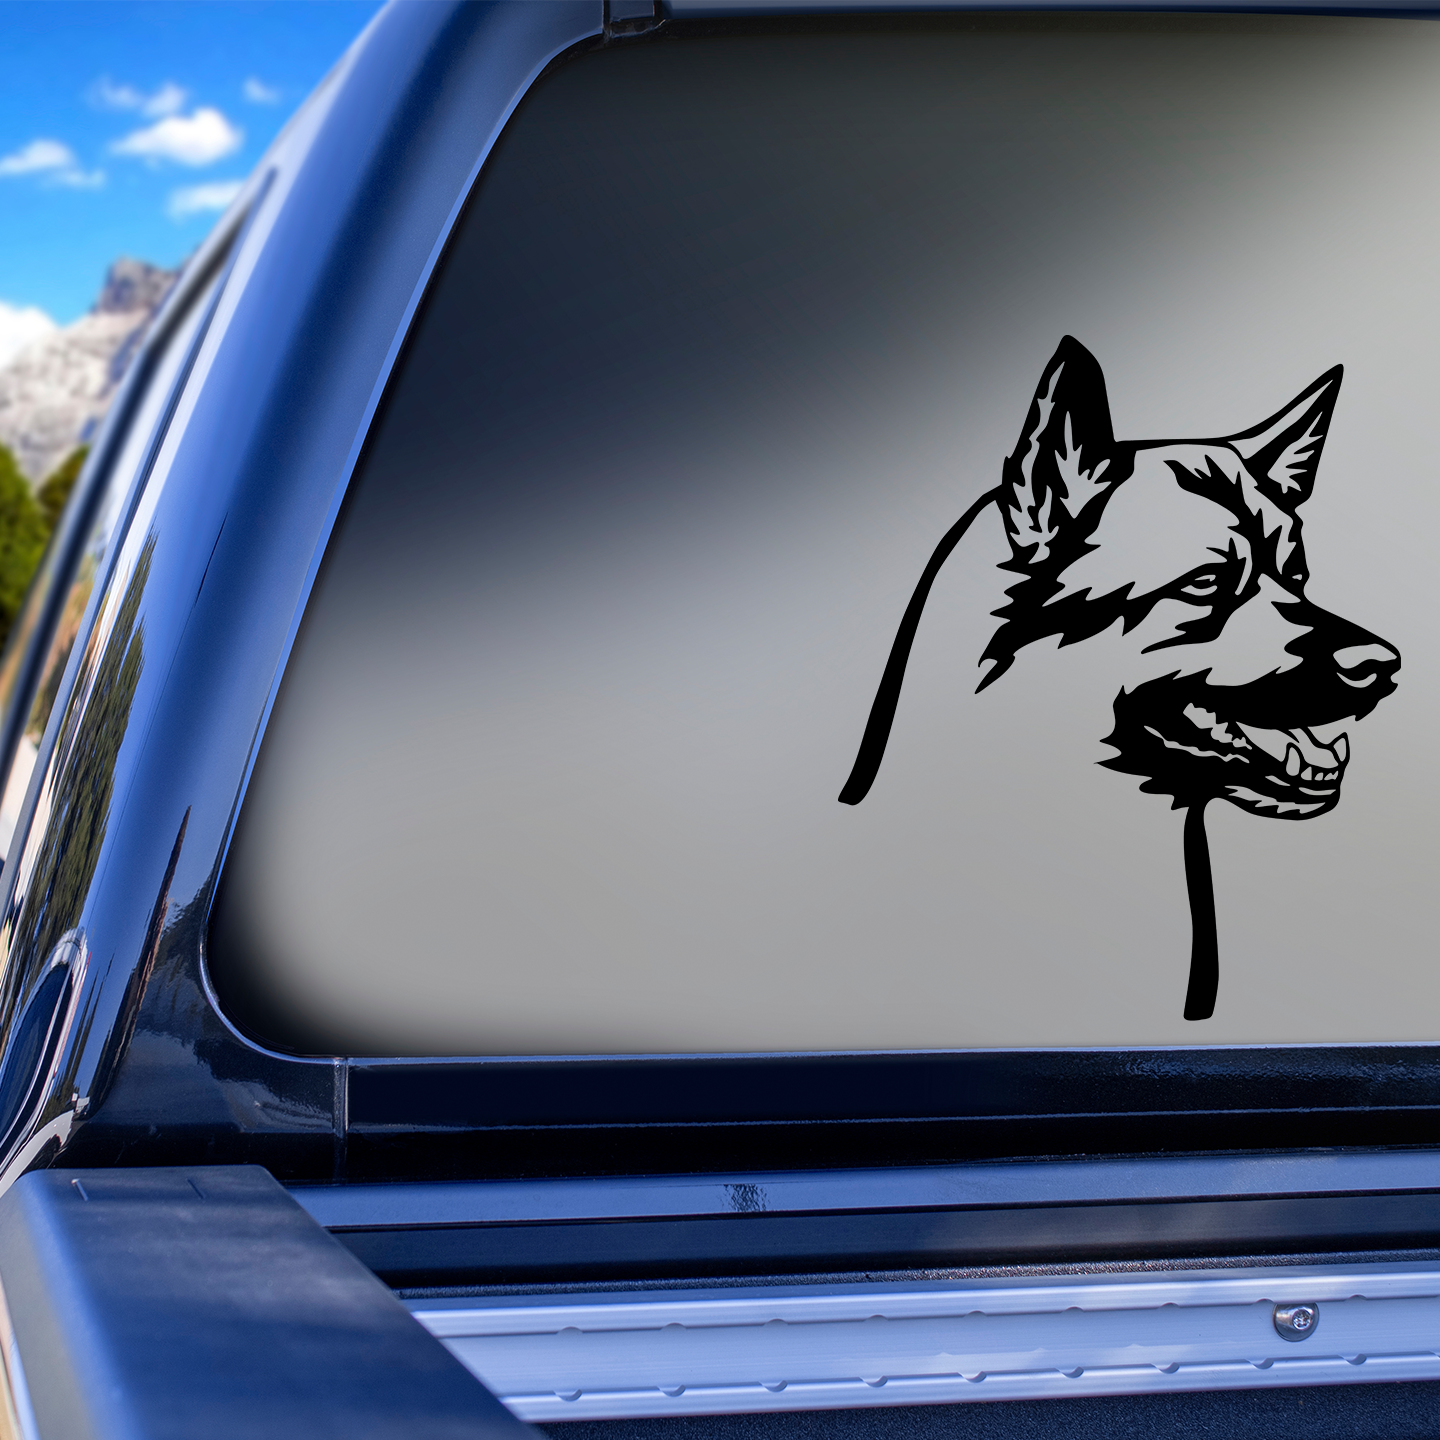 Norwegian Elkhound Sticker